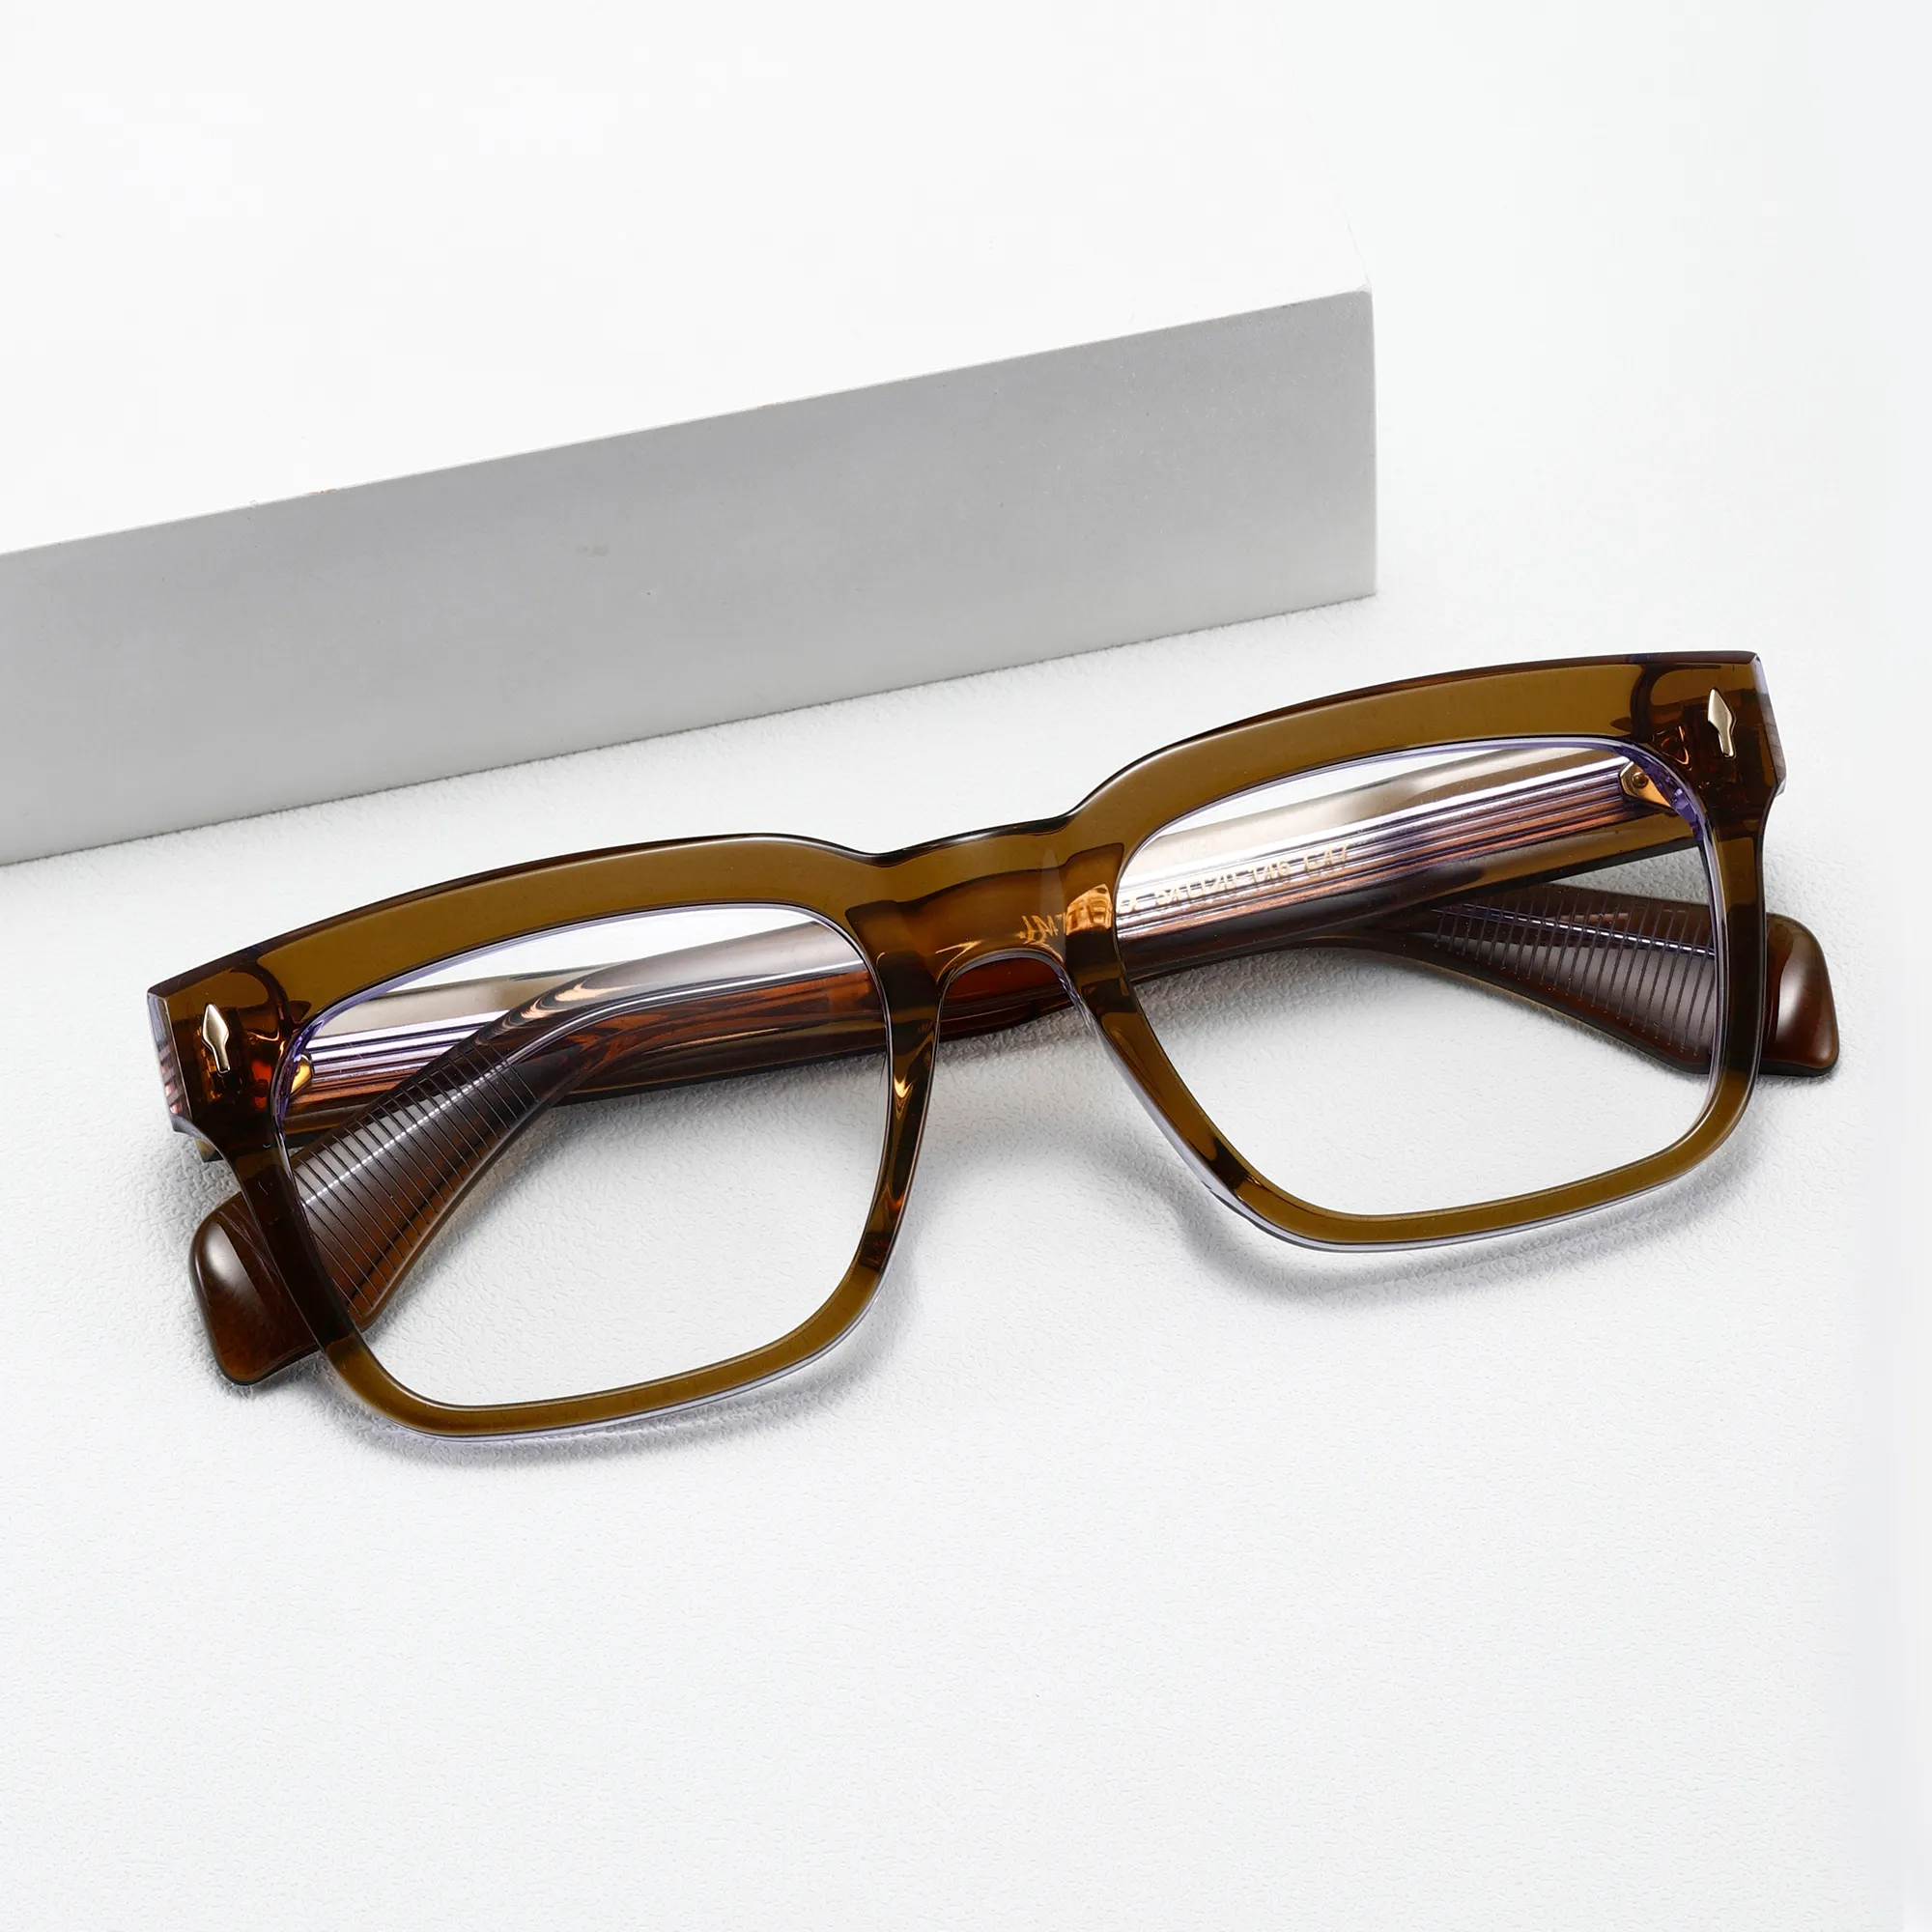 Figroad Unisex blaulichtdämpfende Brille hochwertige quadratische Brille mit blauschnitt-Objektiv Neuzugänge zum Lesen